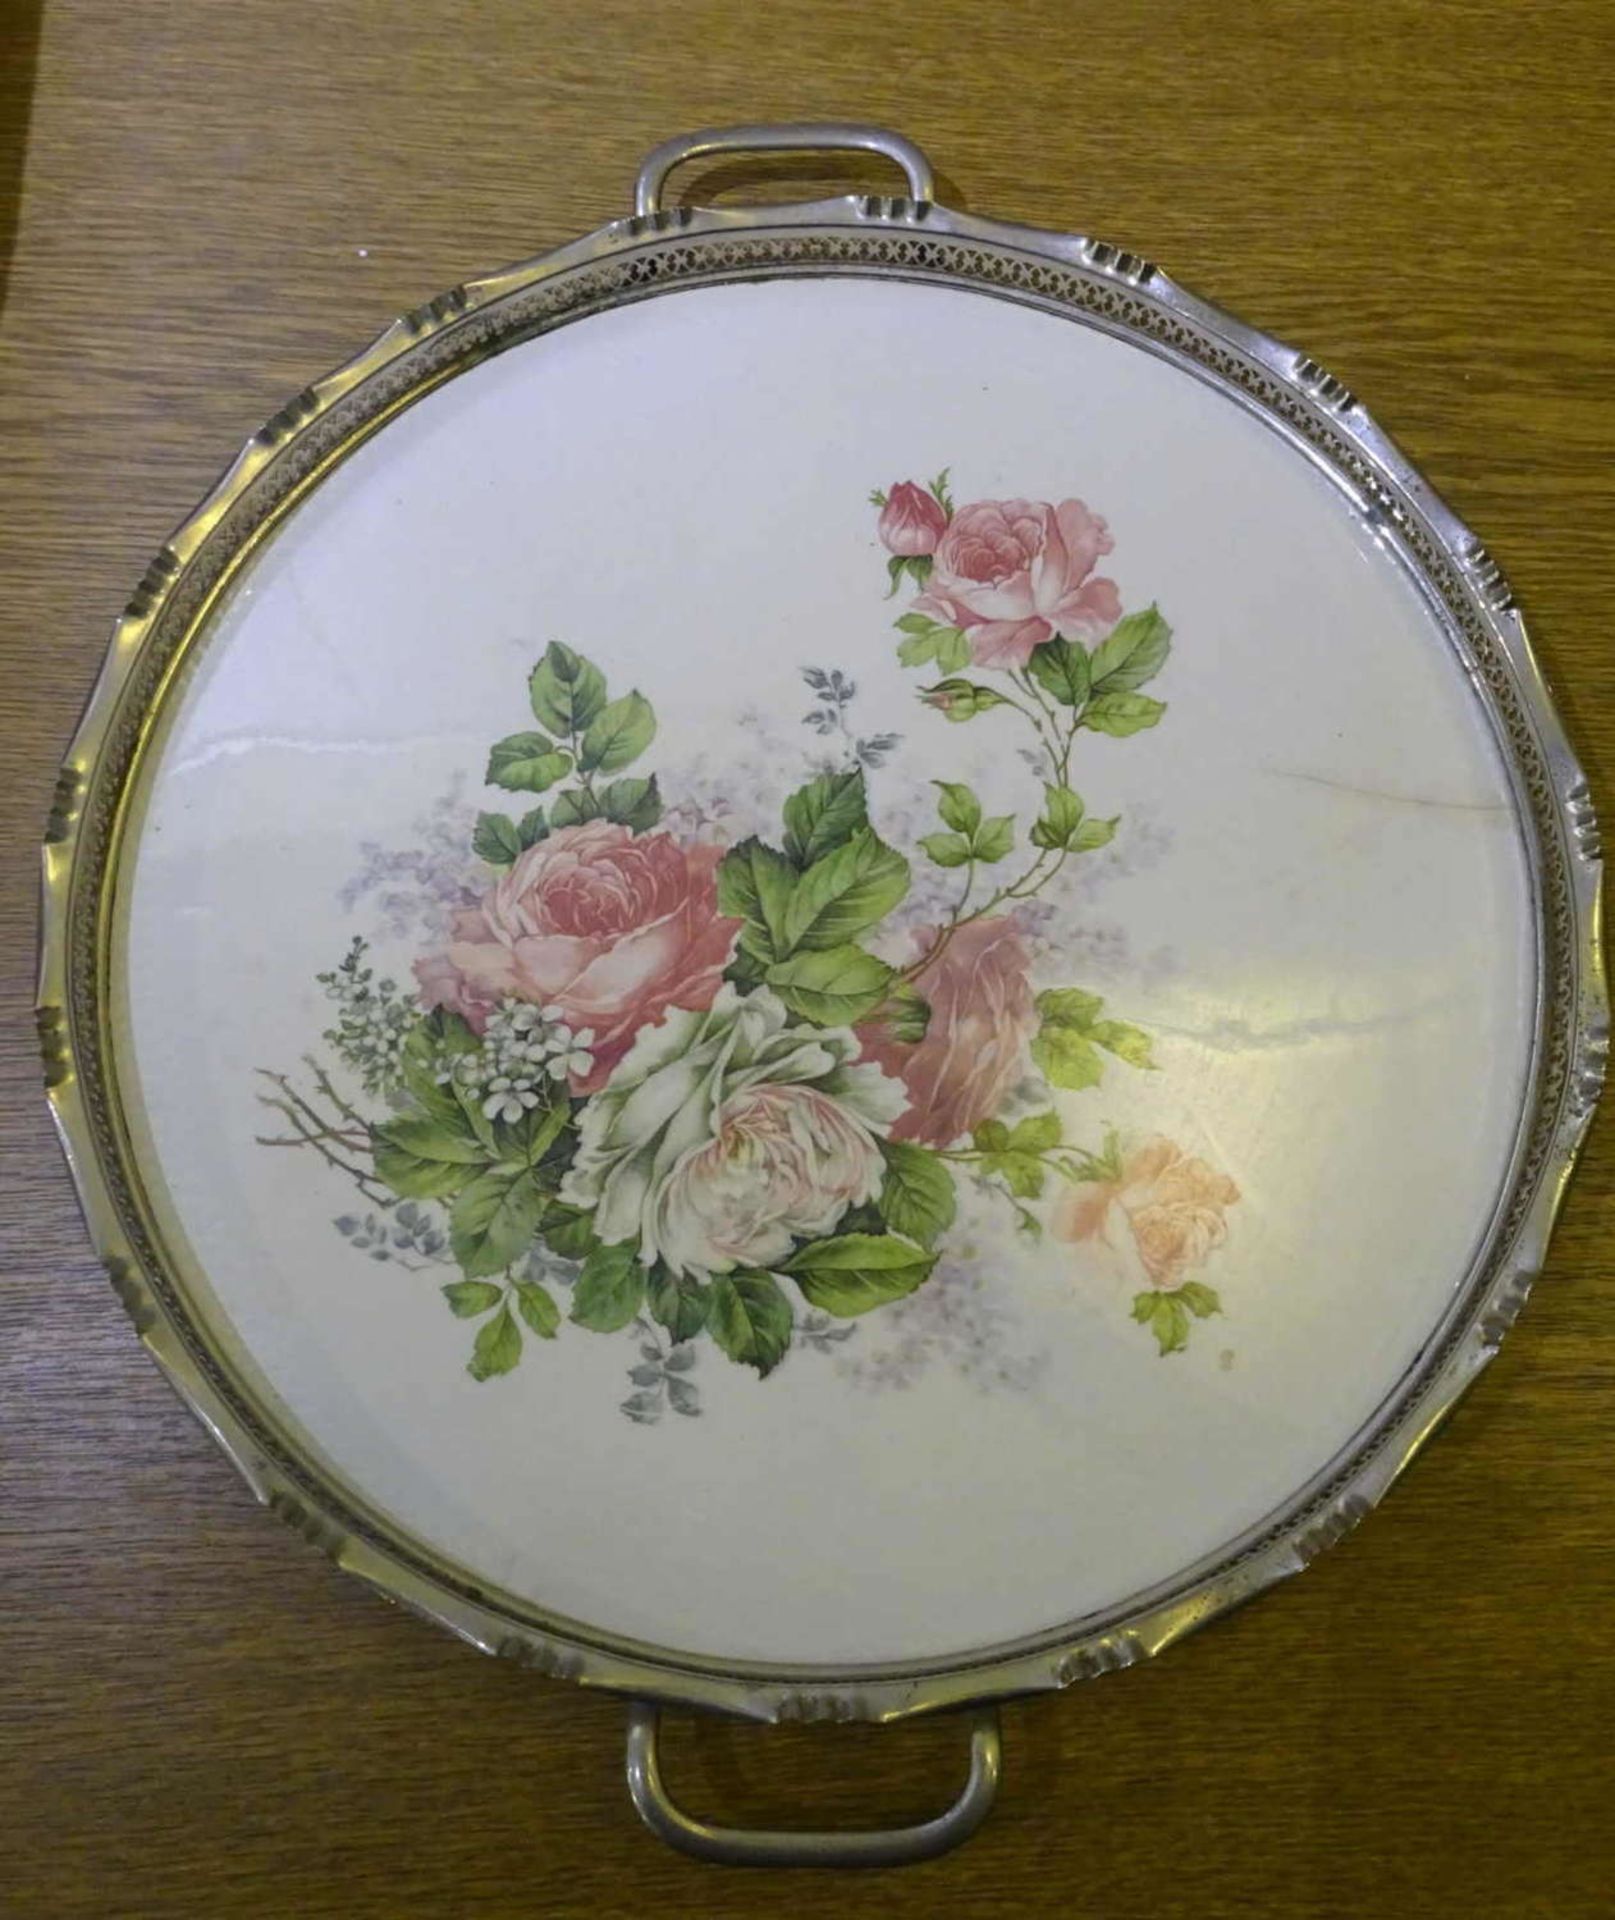 Tortenplatte "Rosen" mit Metallmontur, 1 Fuß fehlt. Durchmesser ca. 37 cmCake plate "Roses" with